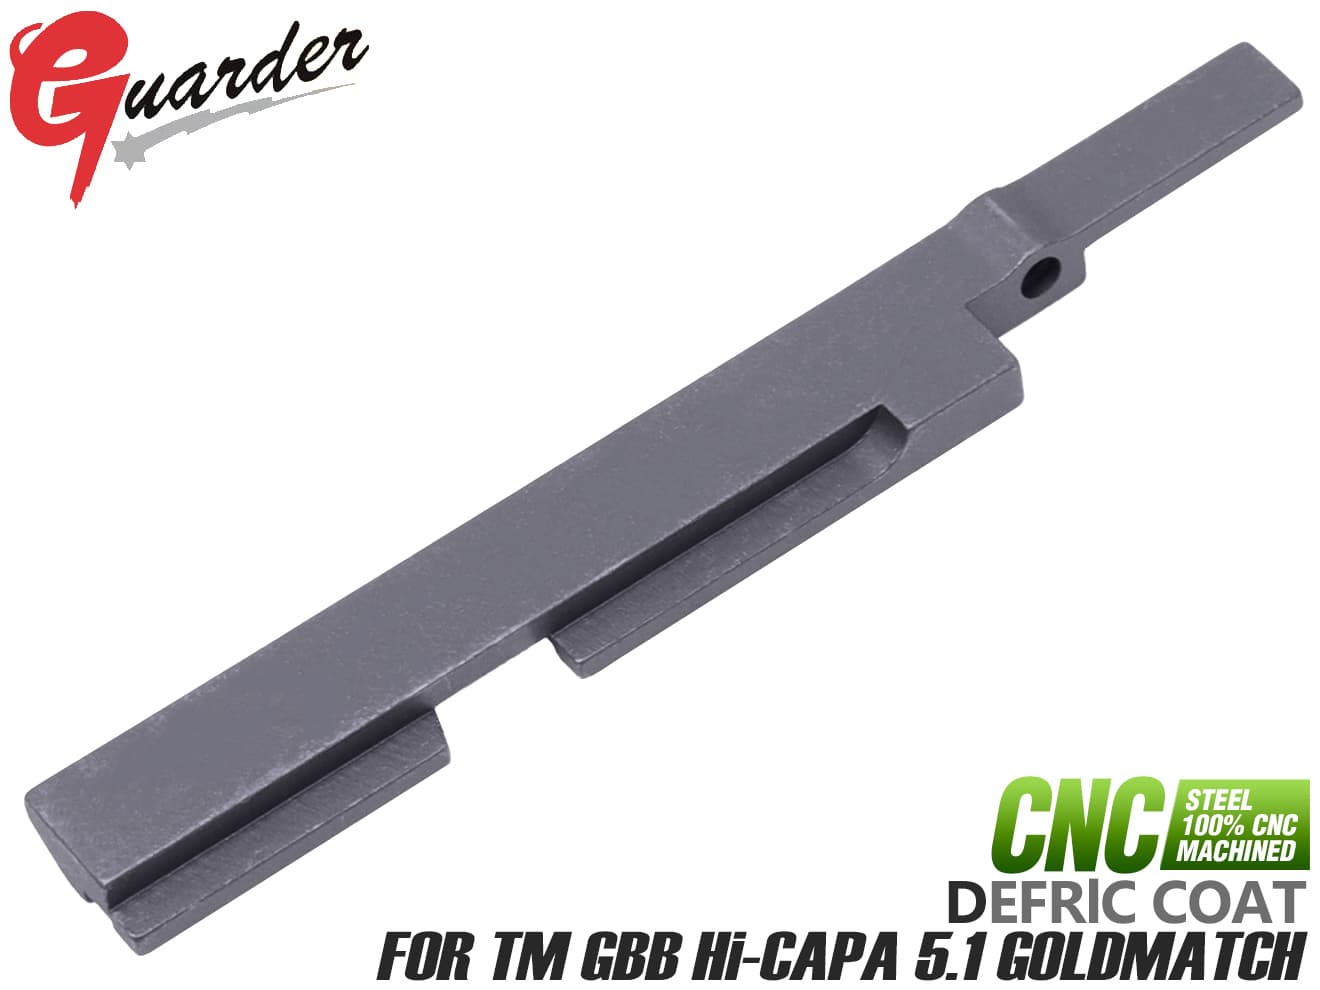 GUARDER スチールCNC 強化スライドレール for マルイ Hi-CAPA GOLD 